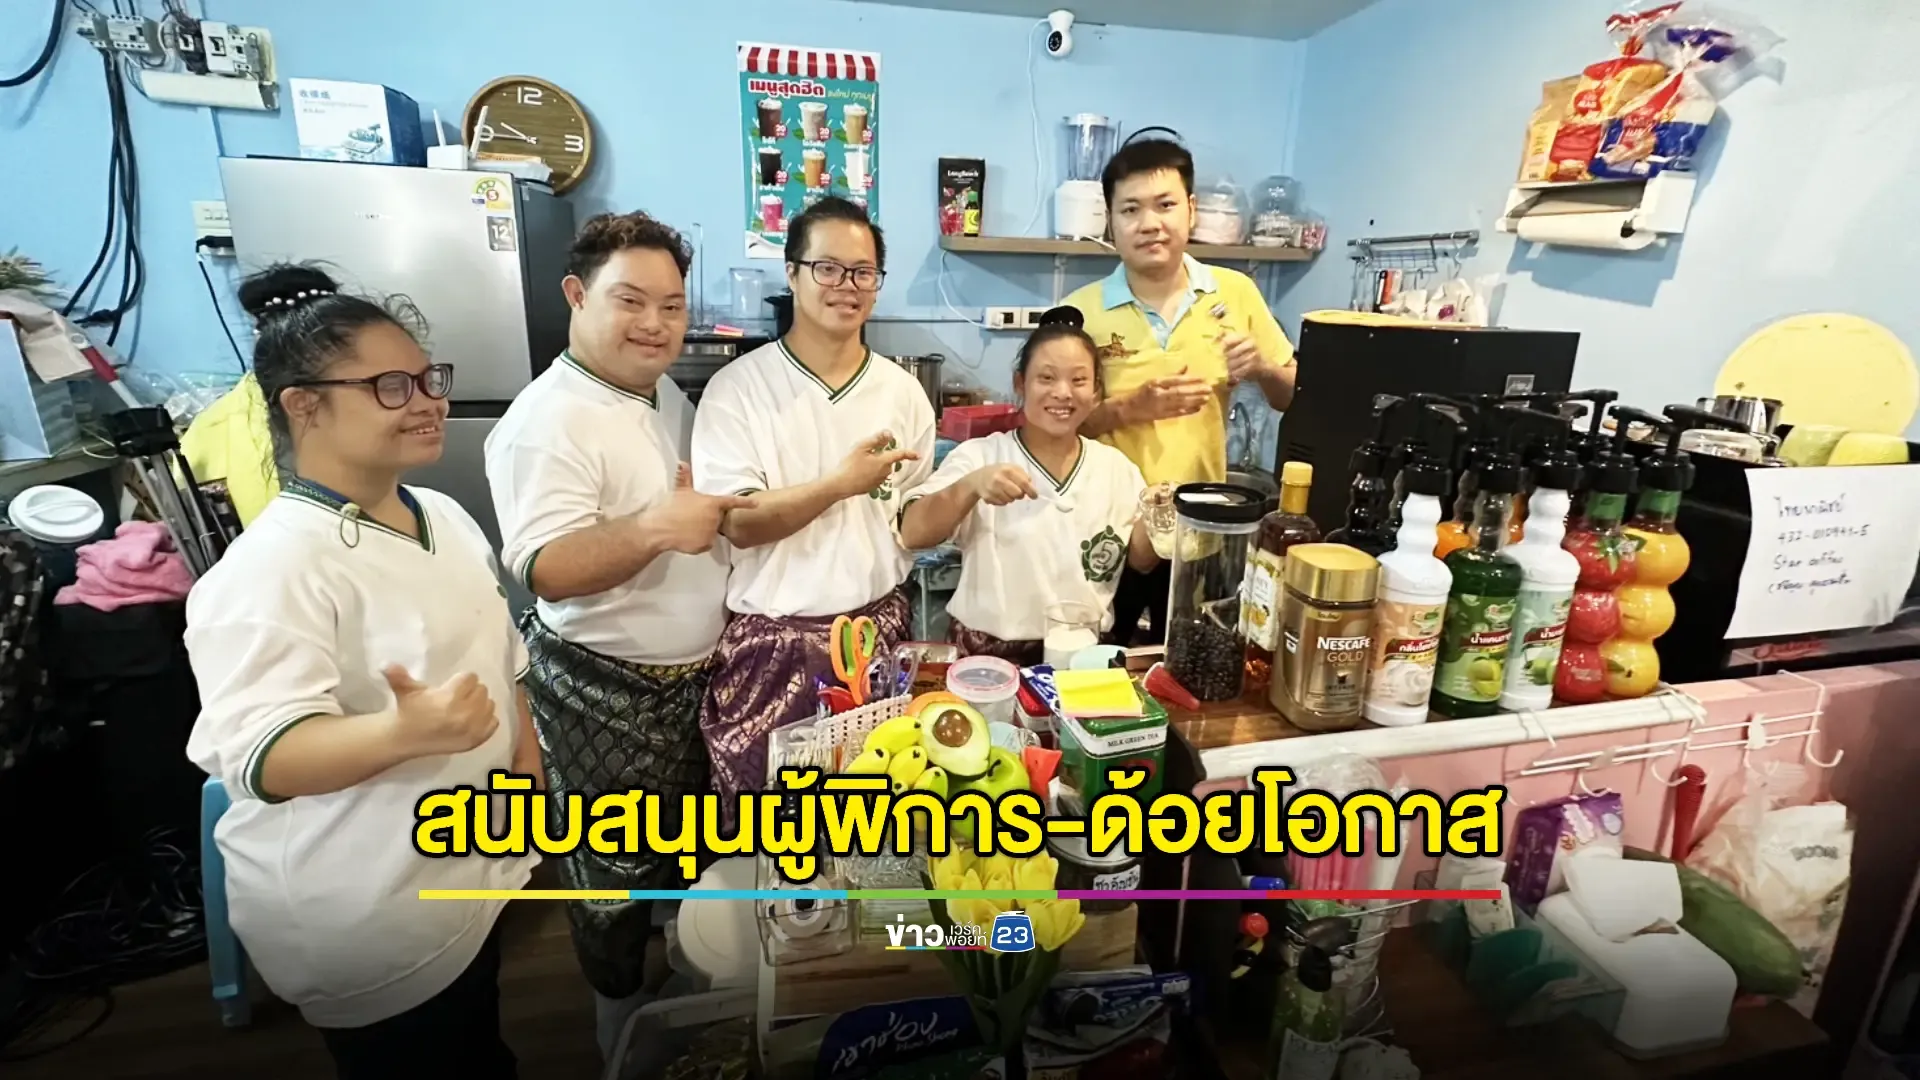 "มูลนิธิ Five for All - มูลนิธิดาวน์ซินโดรม" ชวนคนไทยอุดหนุนร้านกาแฟคนพิการและผู้ด้อยโอกาส "STAR CAFE"  